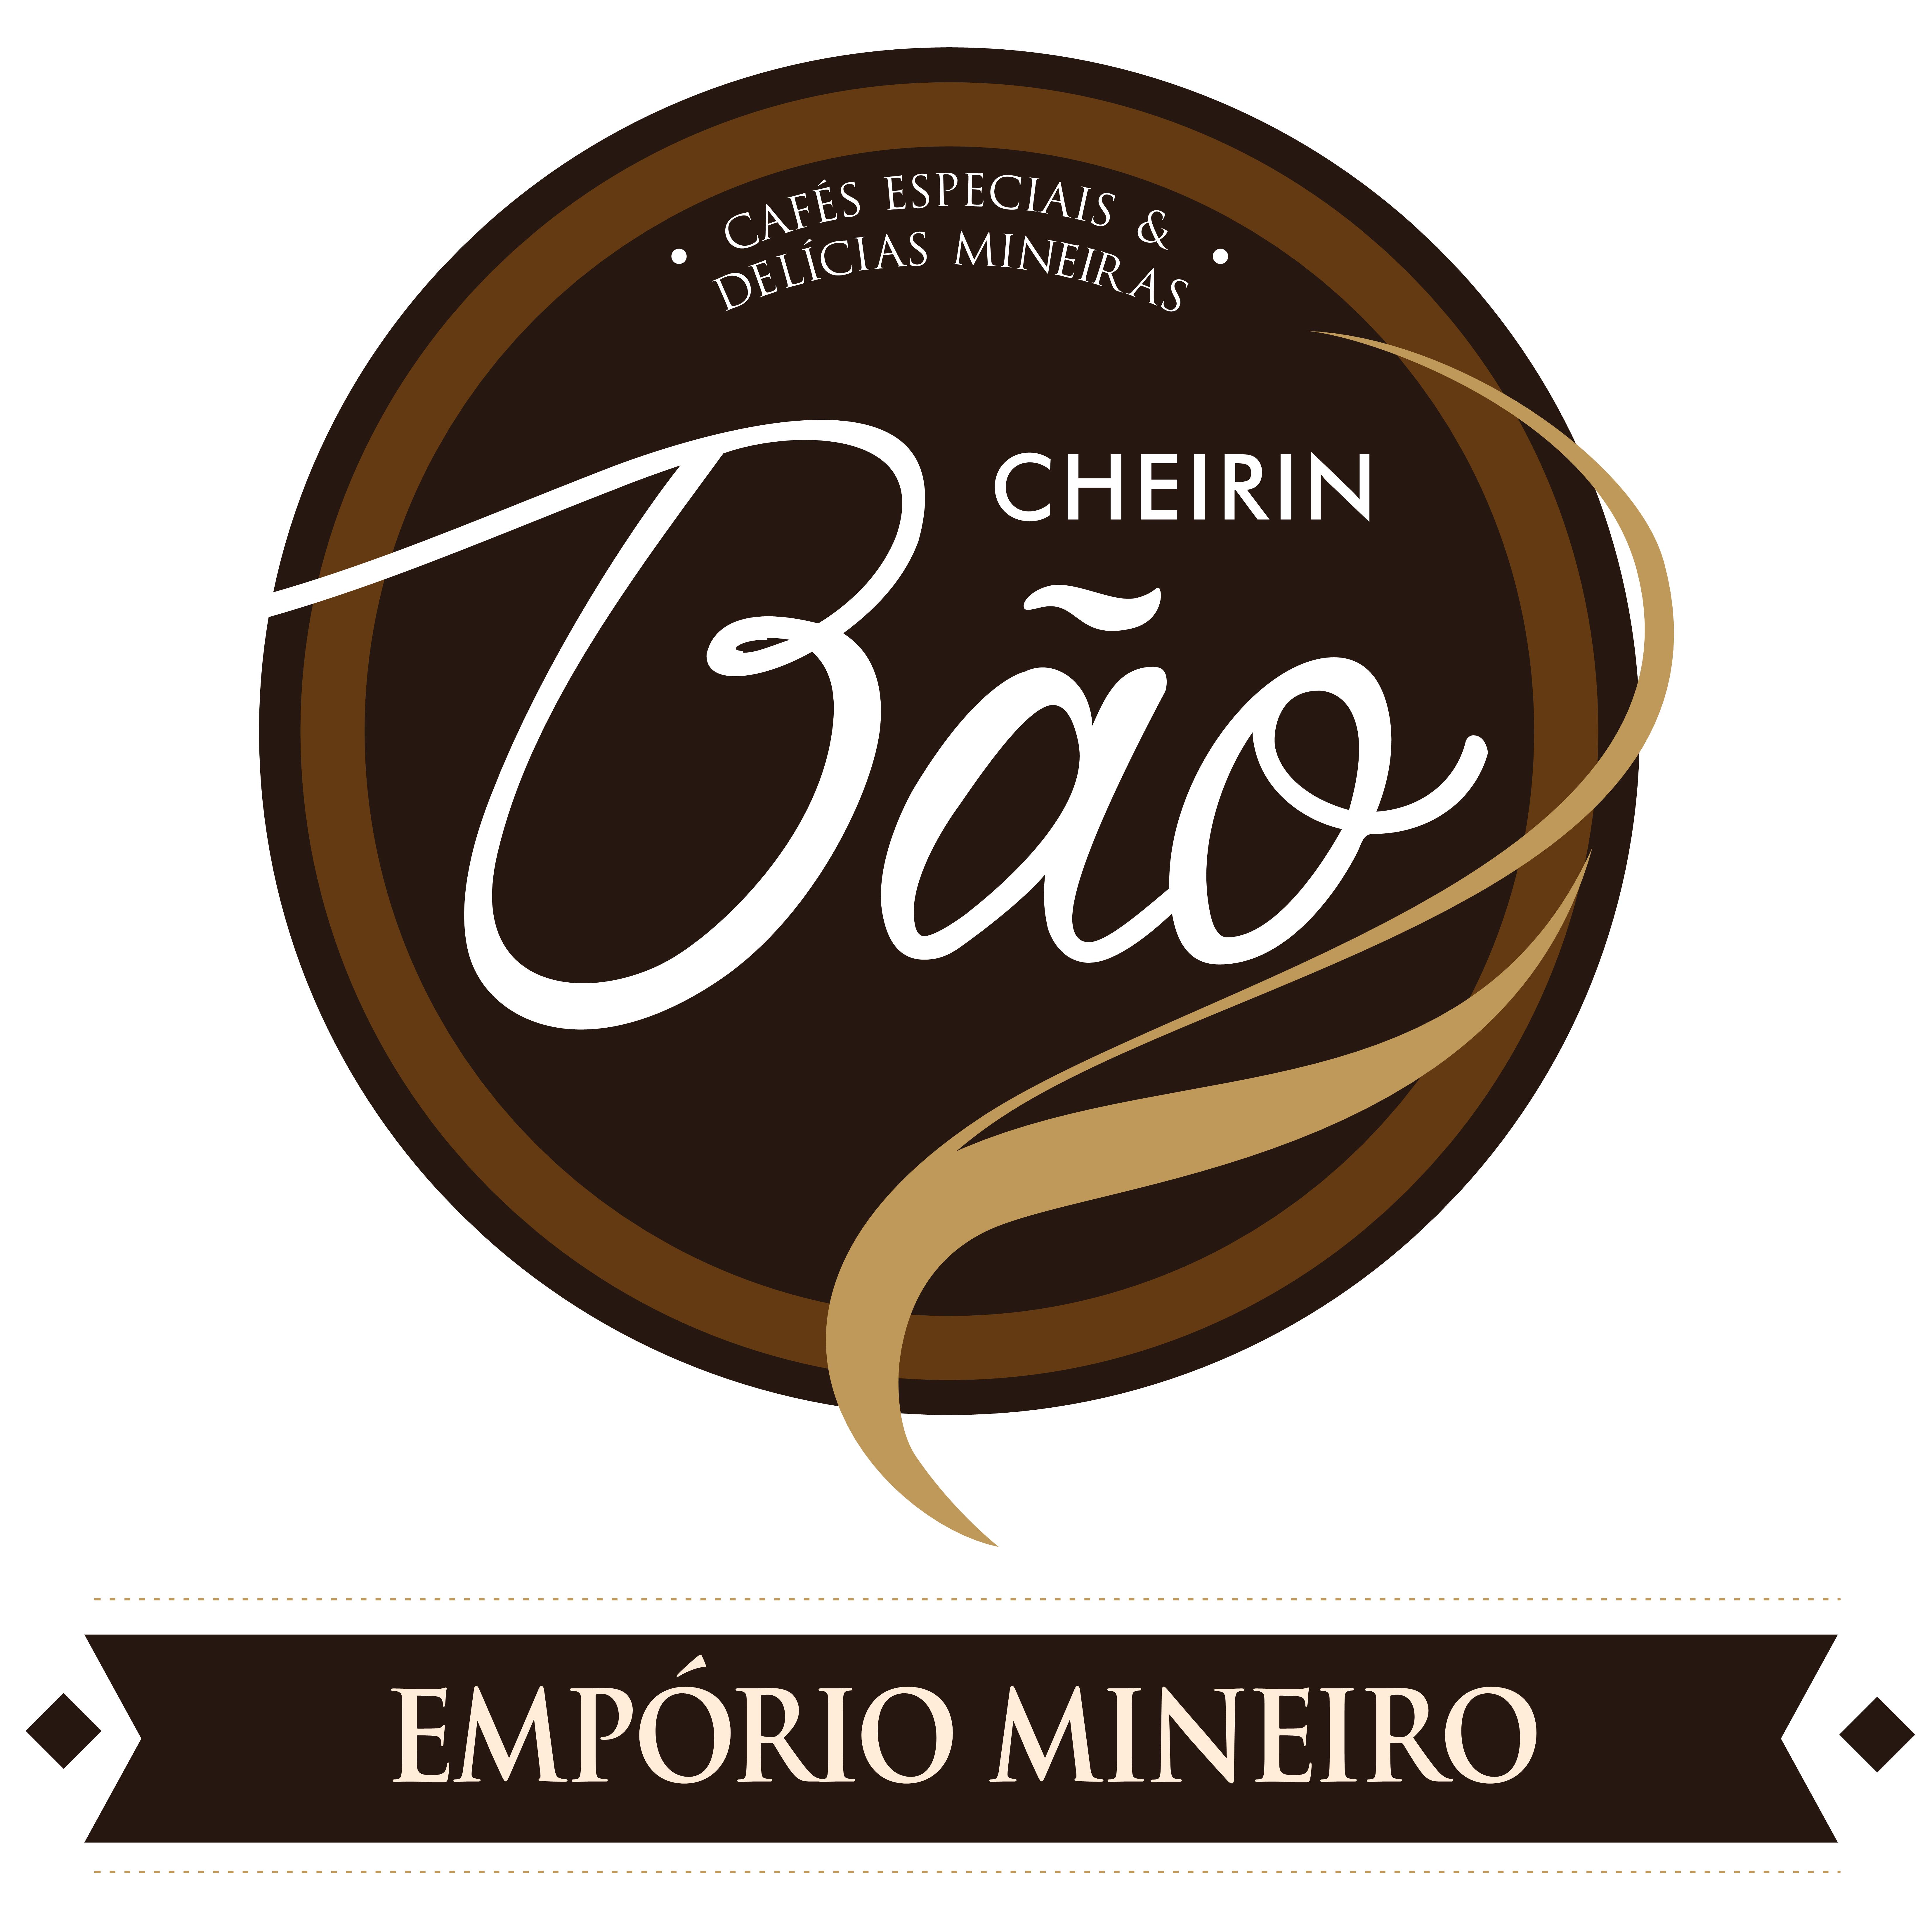 CHEIRIN BÃO EMPÓRIO MINEIRO